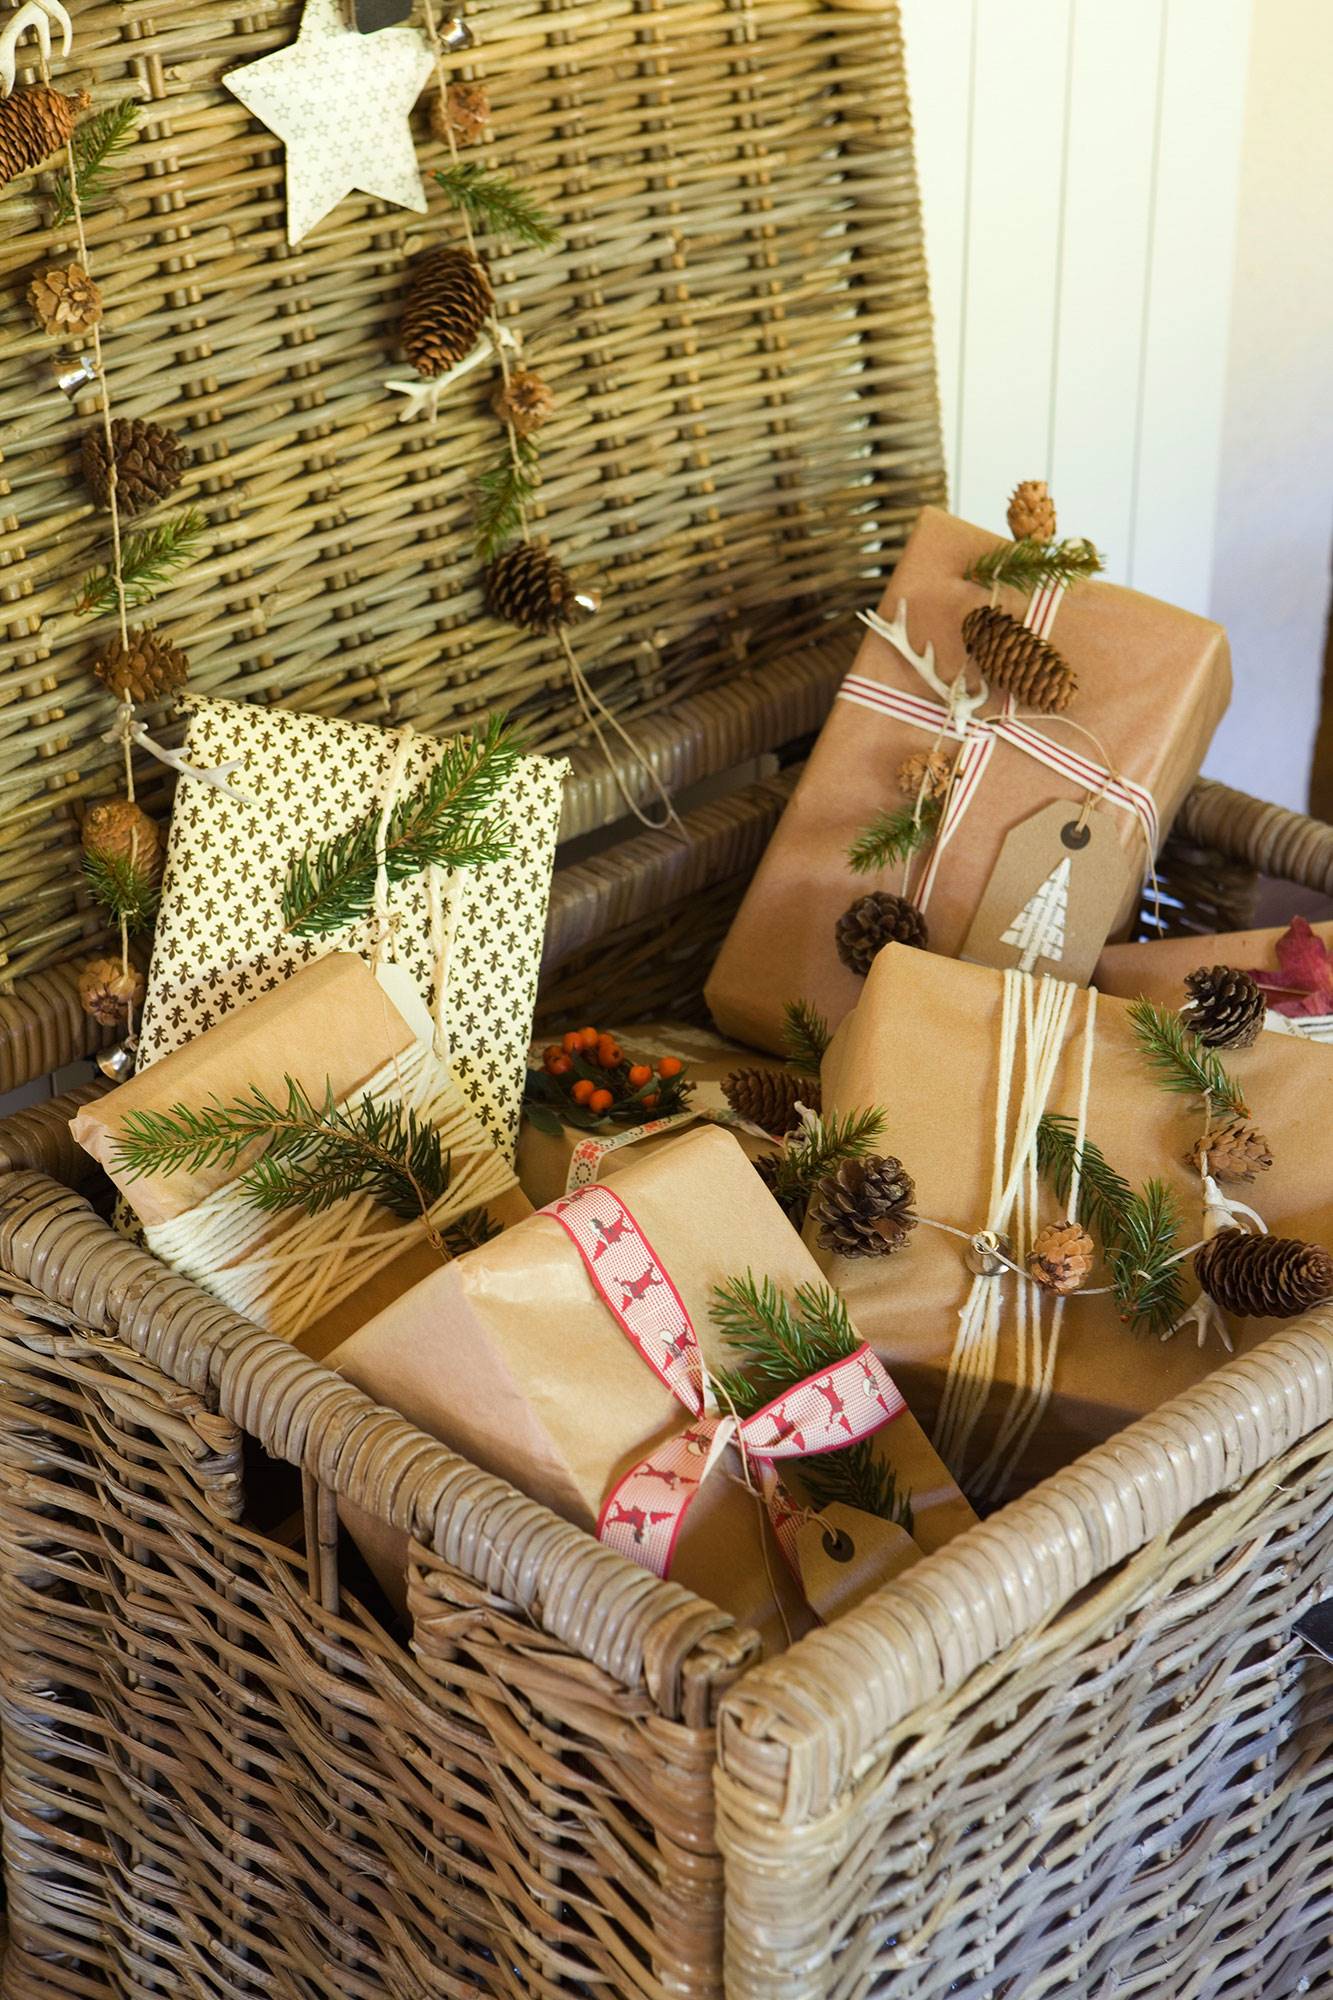 Detalle de cesto de fibras con regalos de Navidad decorados con piñas y motivos vegetales